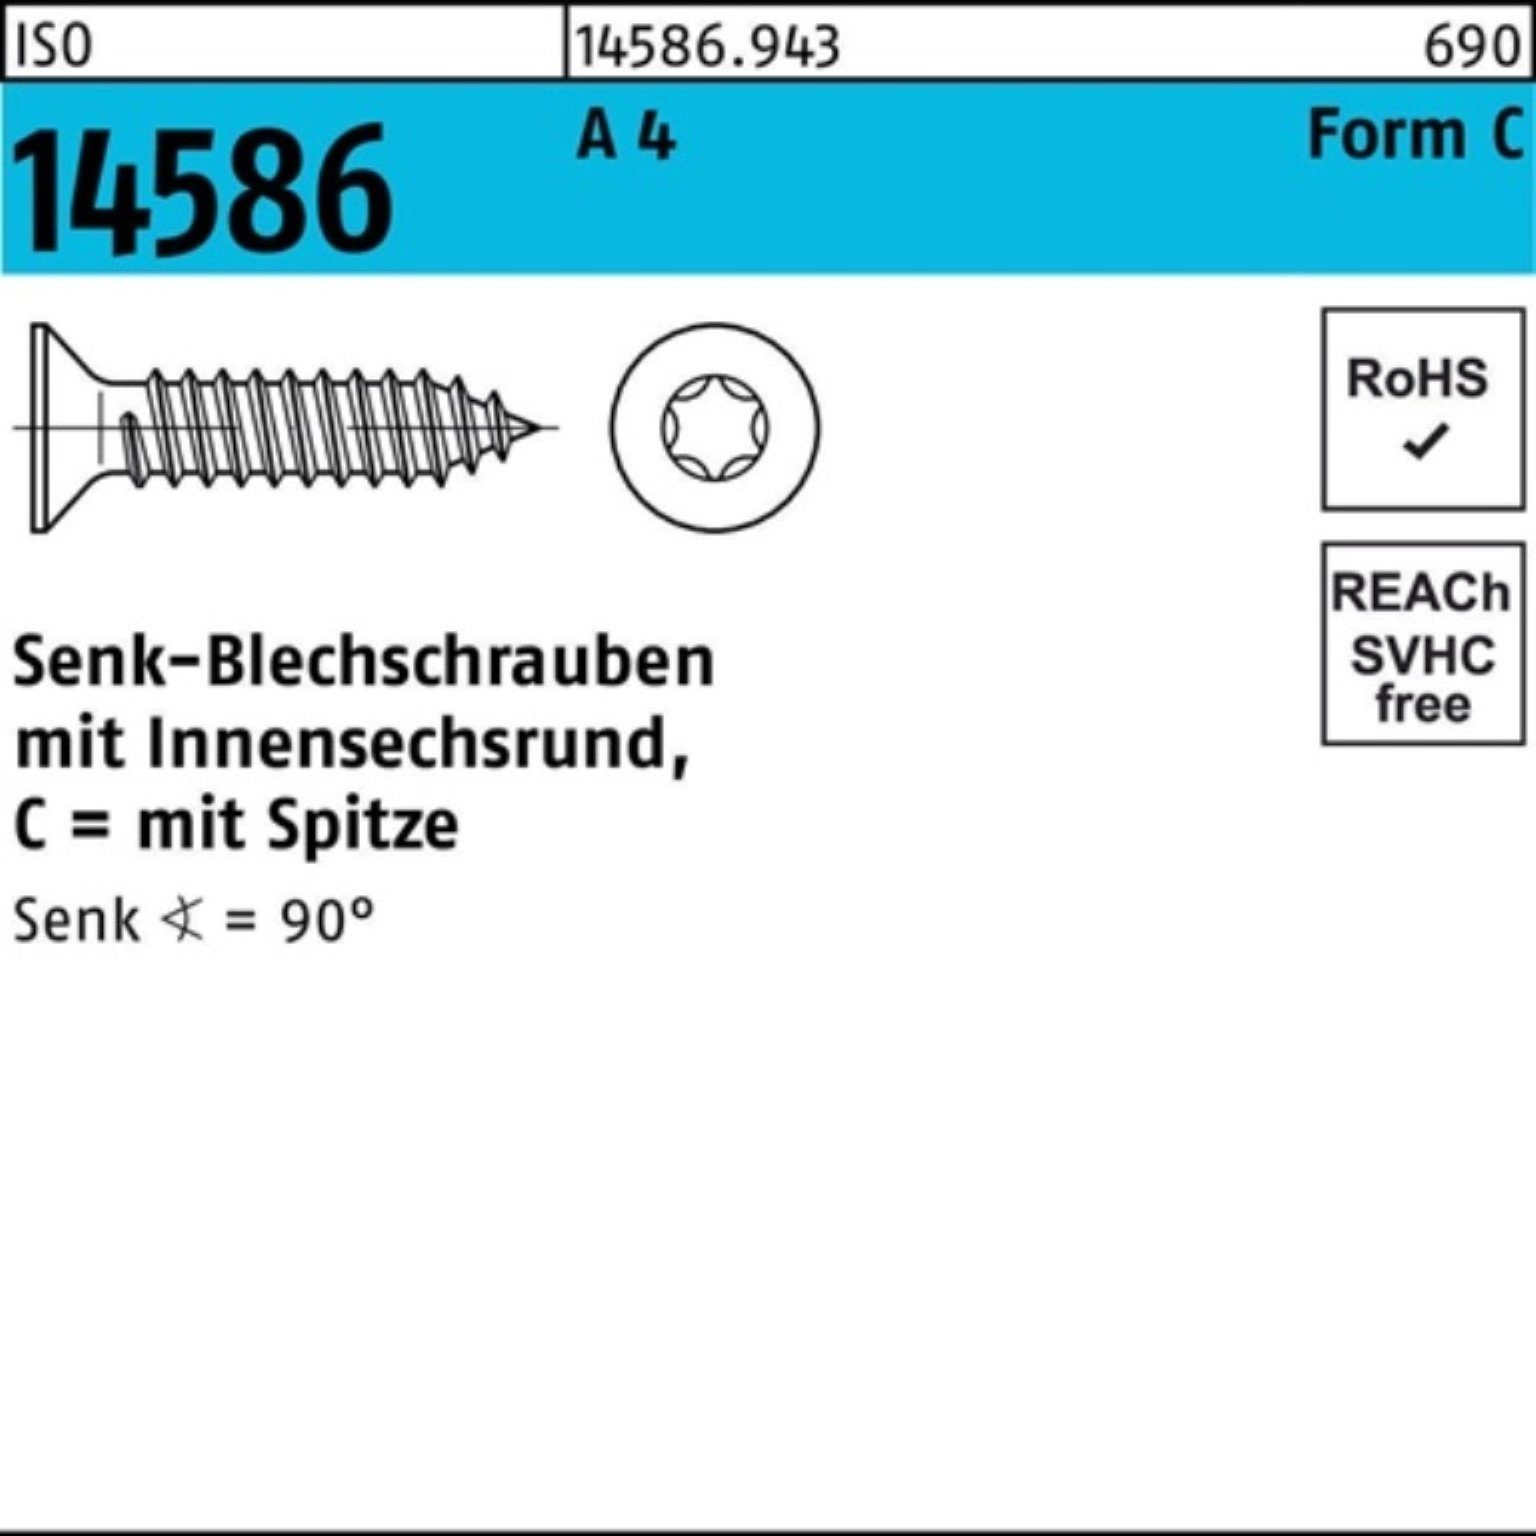 Pack 4 ISO A Schraube 32-T15 500er 3,9x Senkblechschraube Reyher ISR/Spitze 500 14586